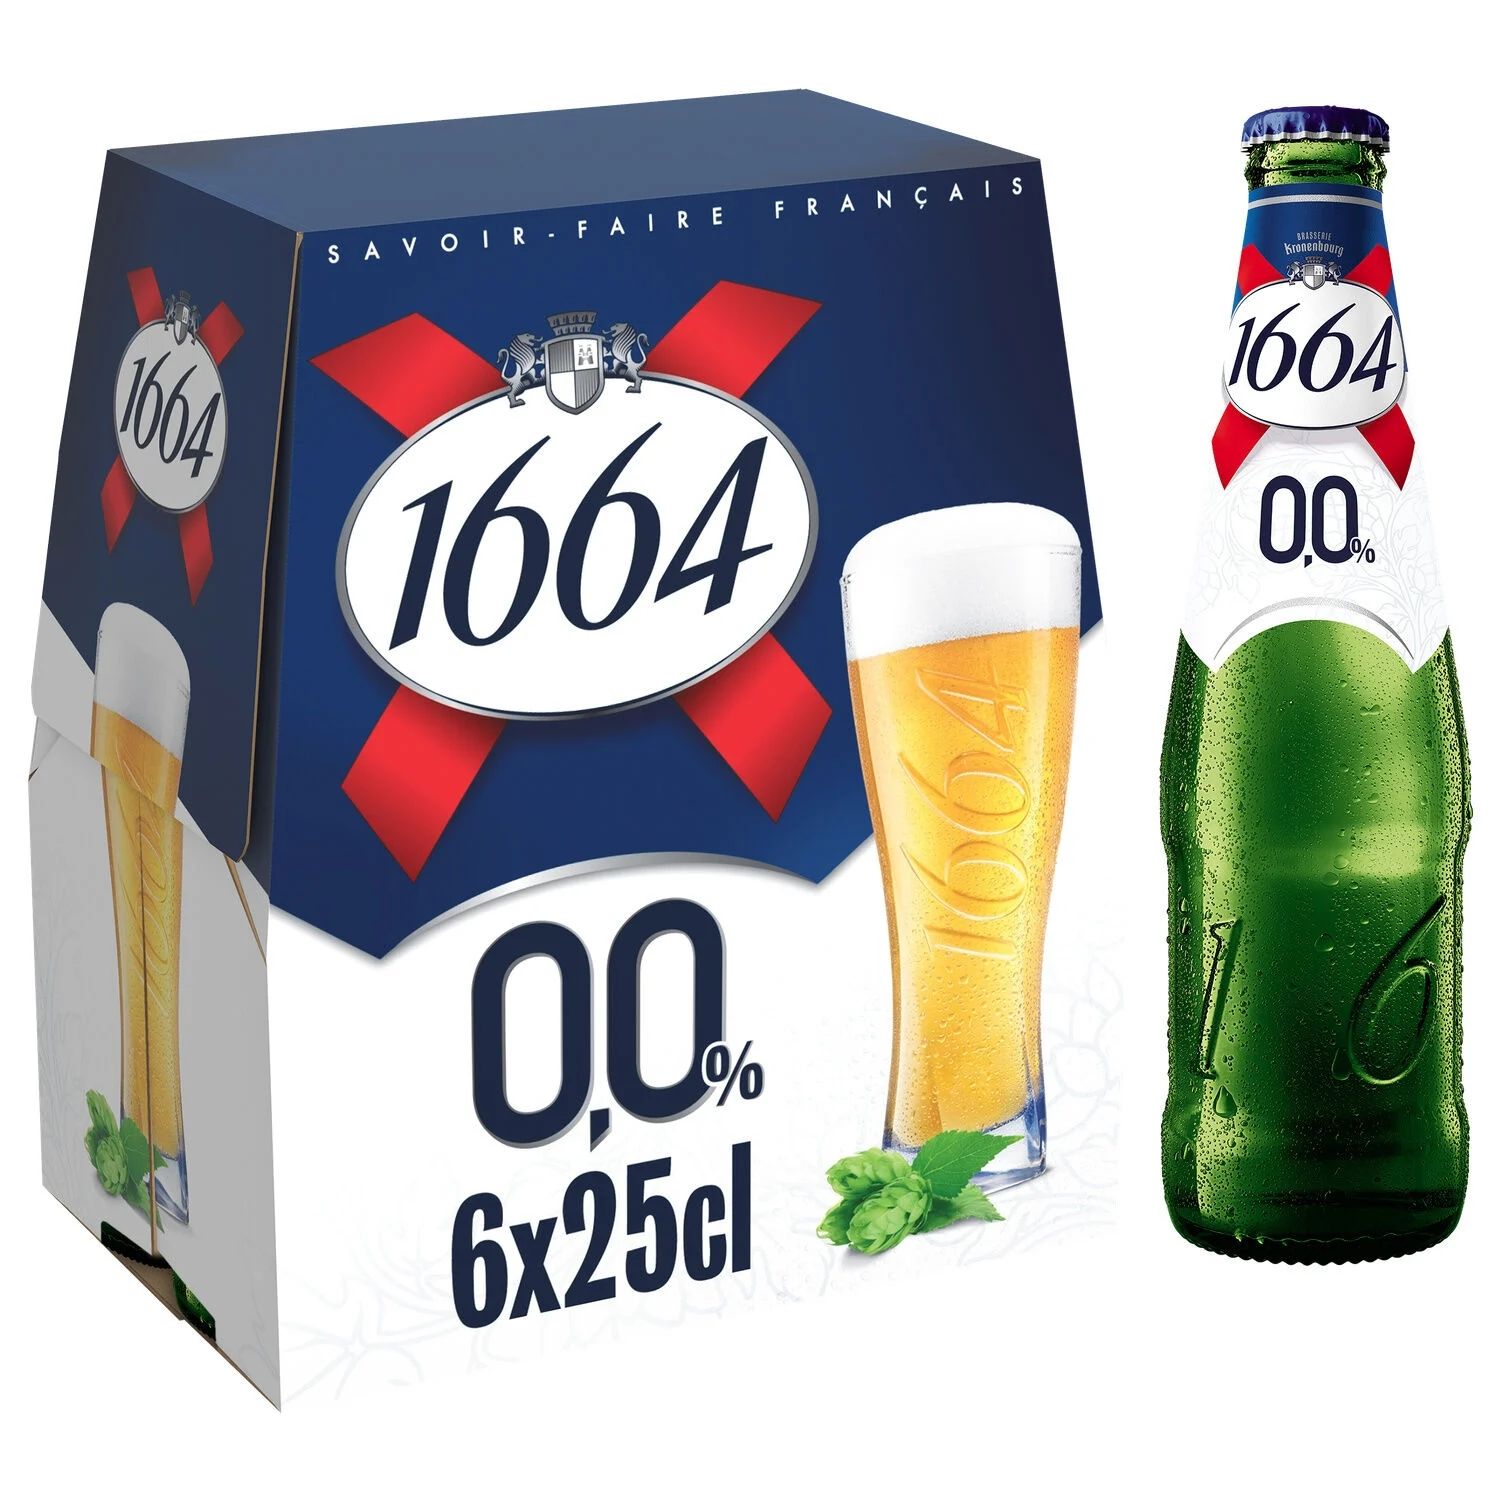 Bière Blonde Sans Alcool, 6x25cl - 1664